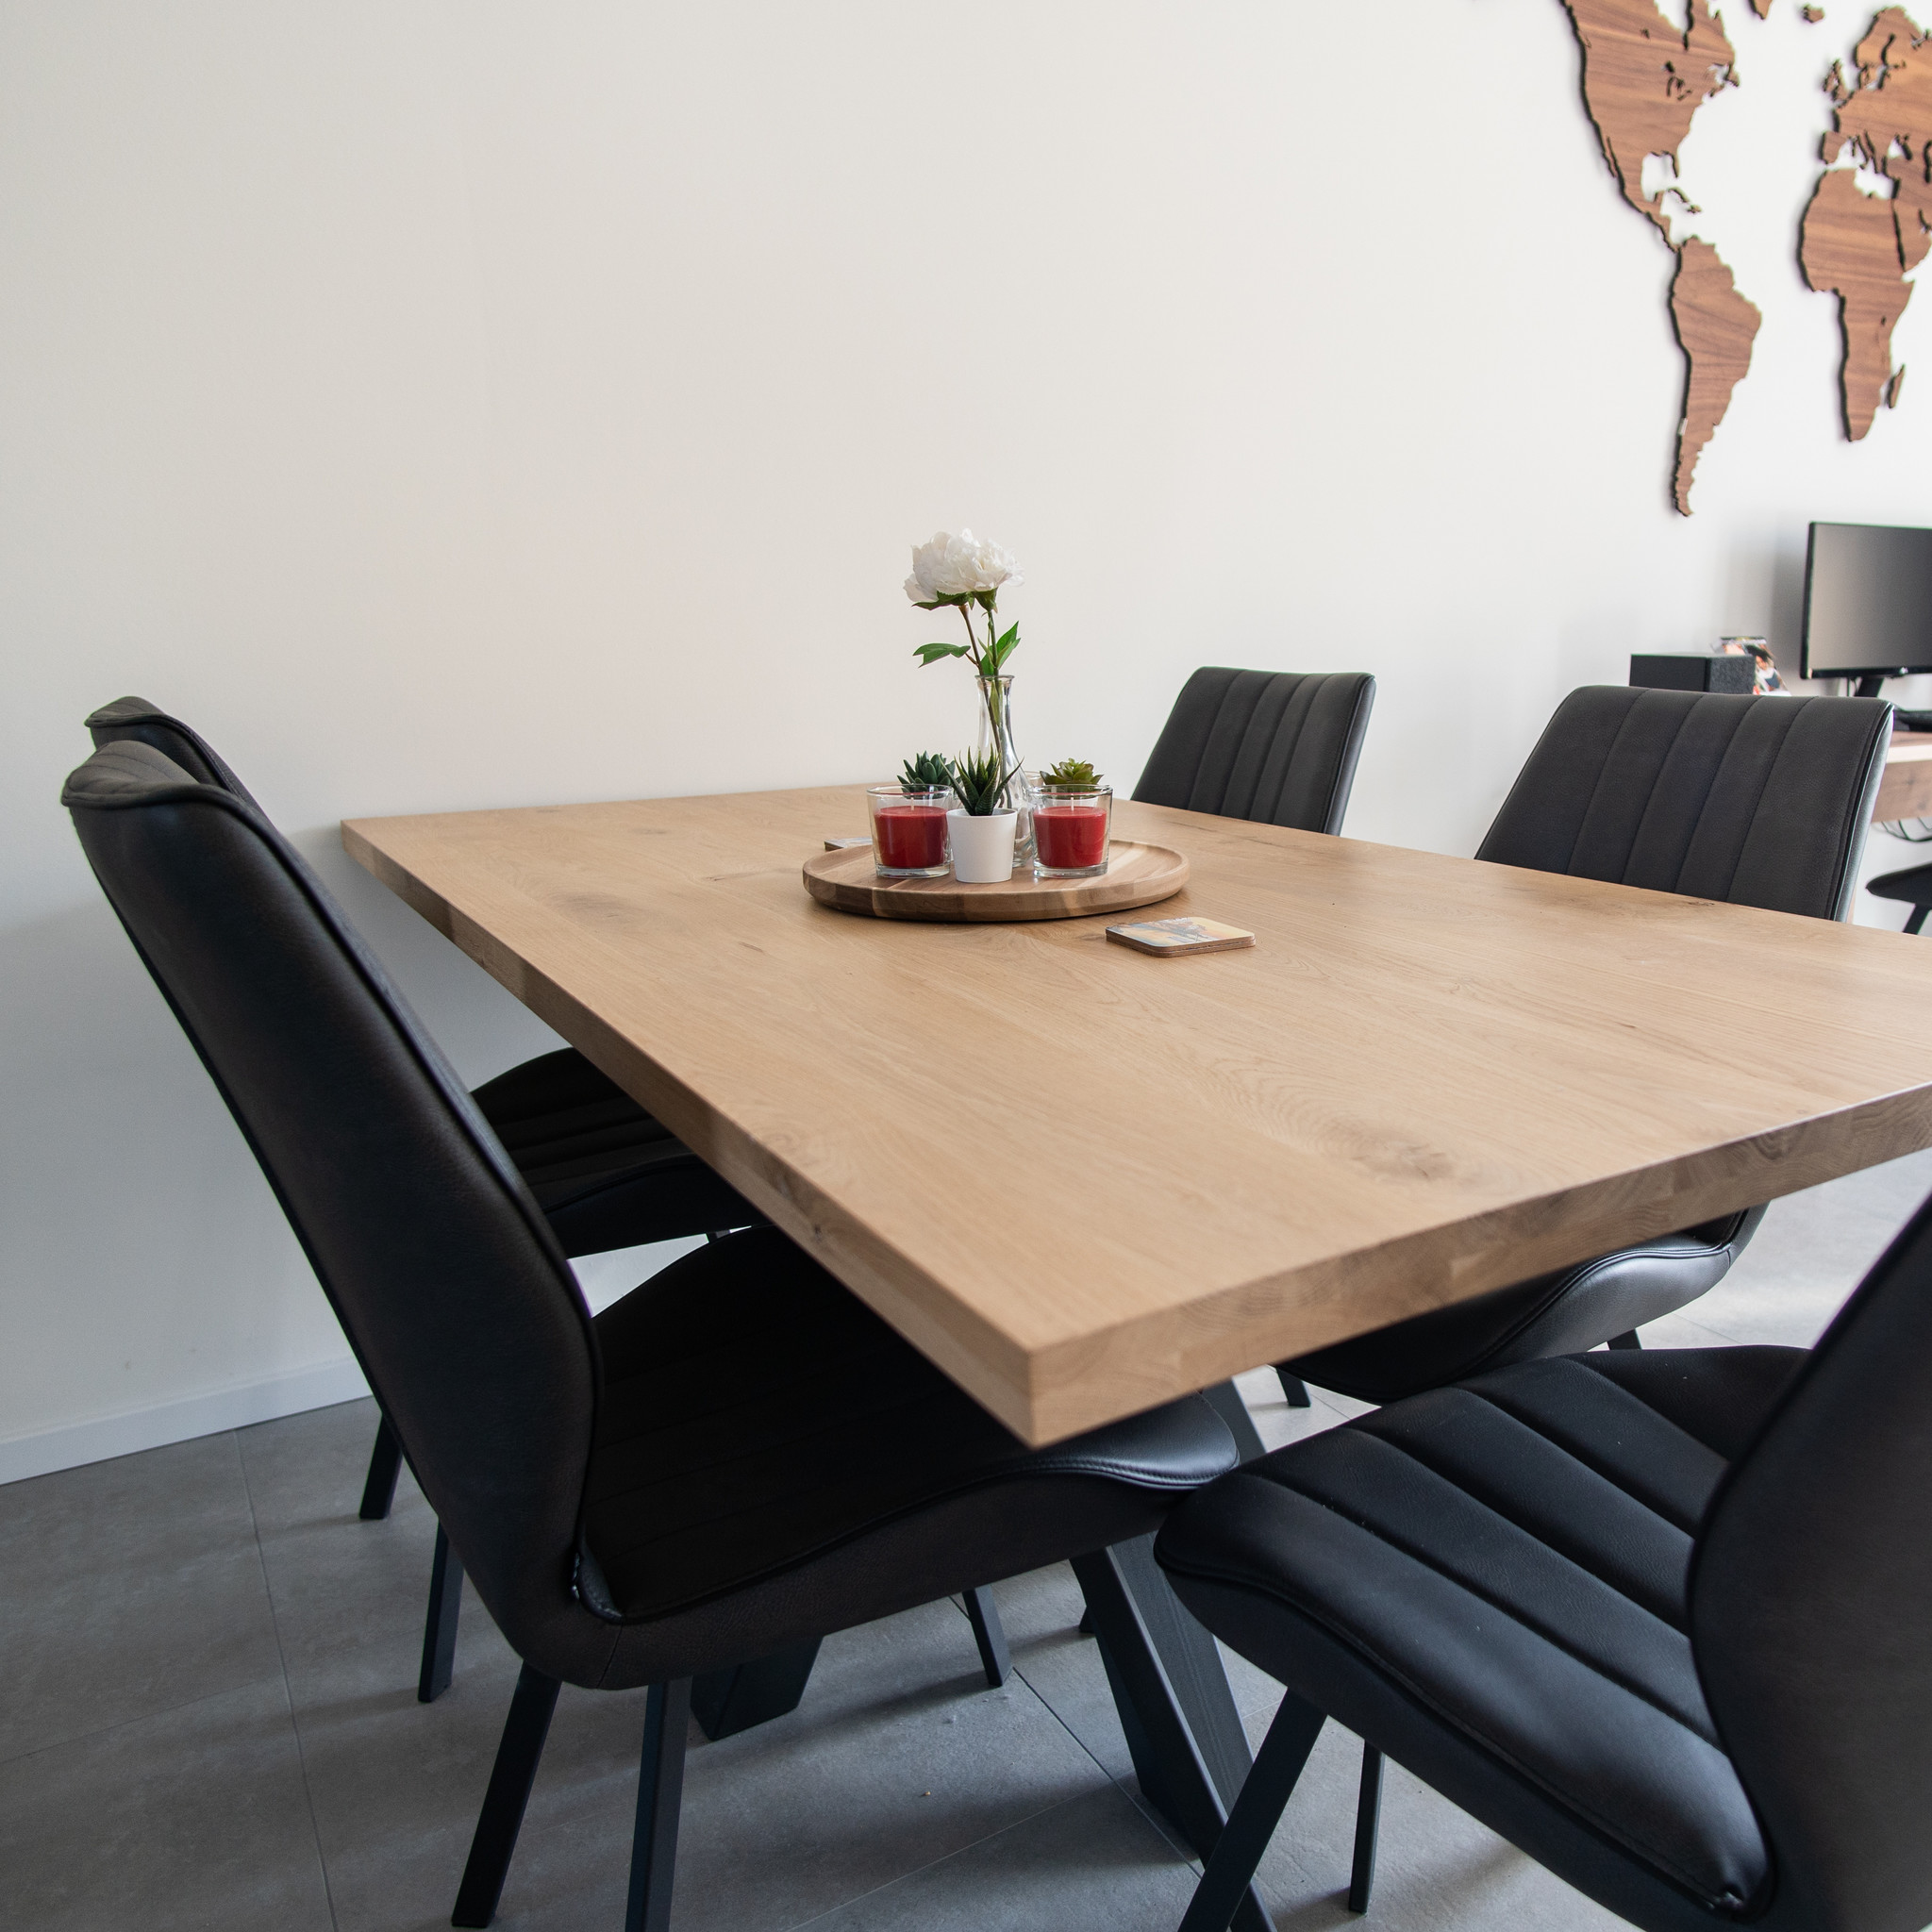  Tischplatte Eiche nach Maß - Aufgedoppelt - 6 cm dick (2-lagig) - Eichenholz rustikal - Eiche Tischplatte massiv - verleimt & künstlich getrocknet (HF 8-12%) - 50-120x50-350 cm